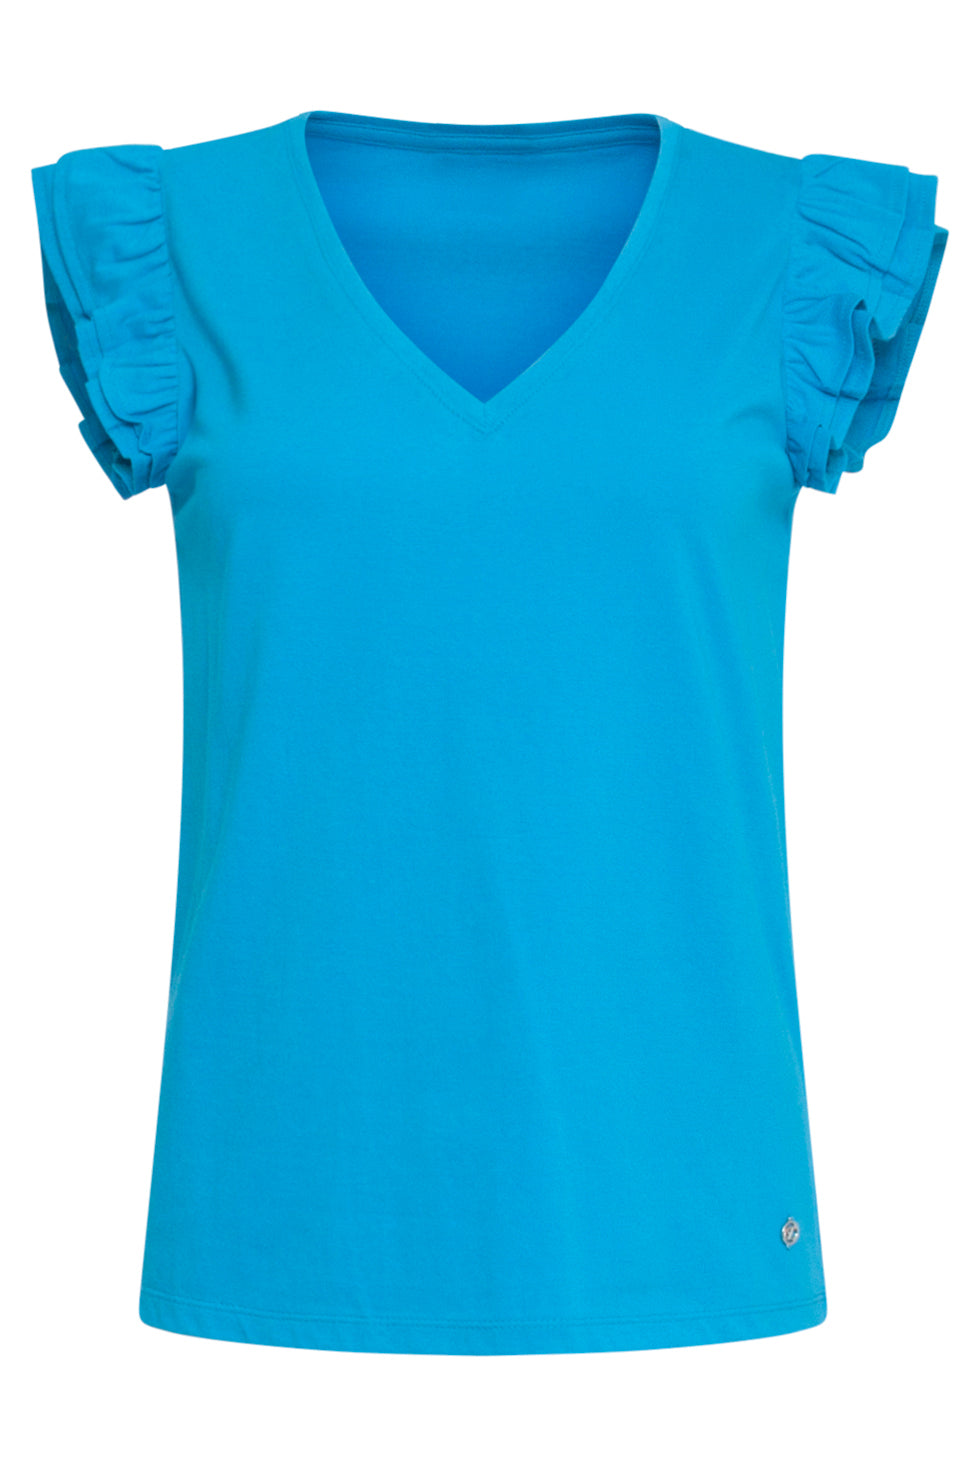 24384 Dames Blauw T-Shirt Met Korte Mouwen En Dubbele Ruches